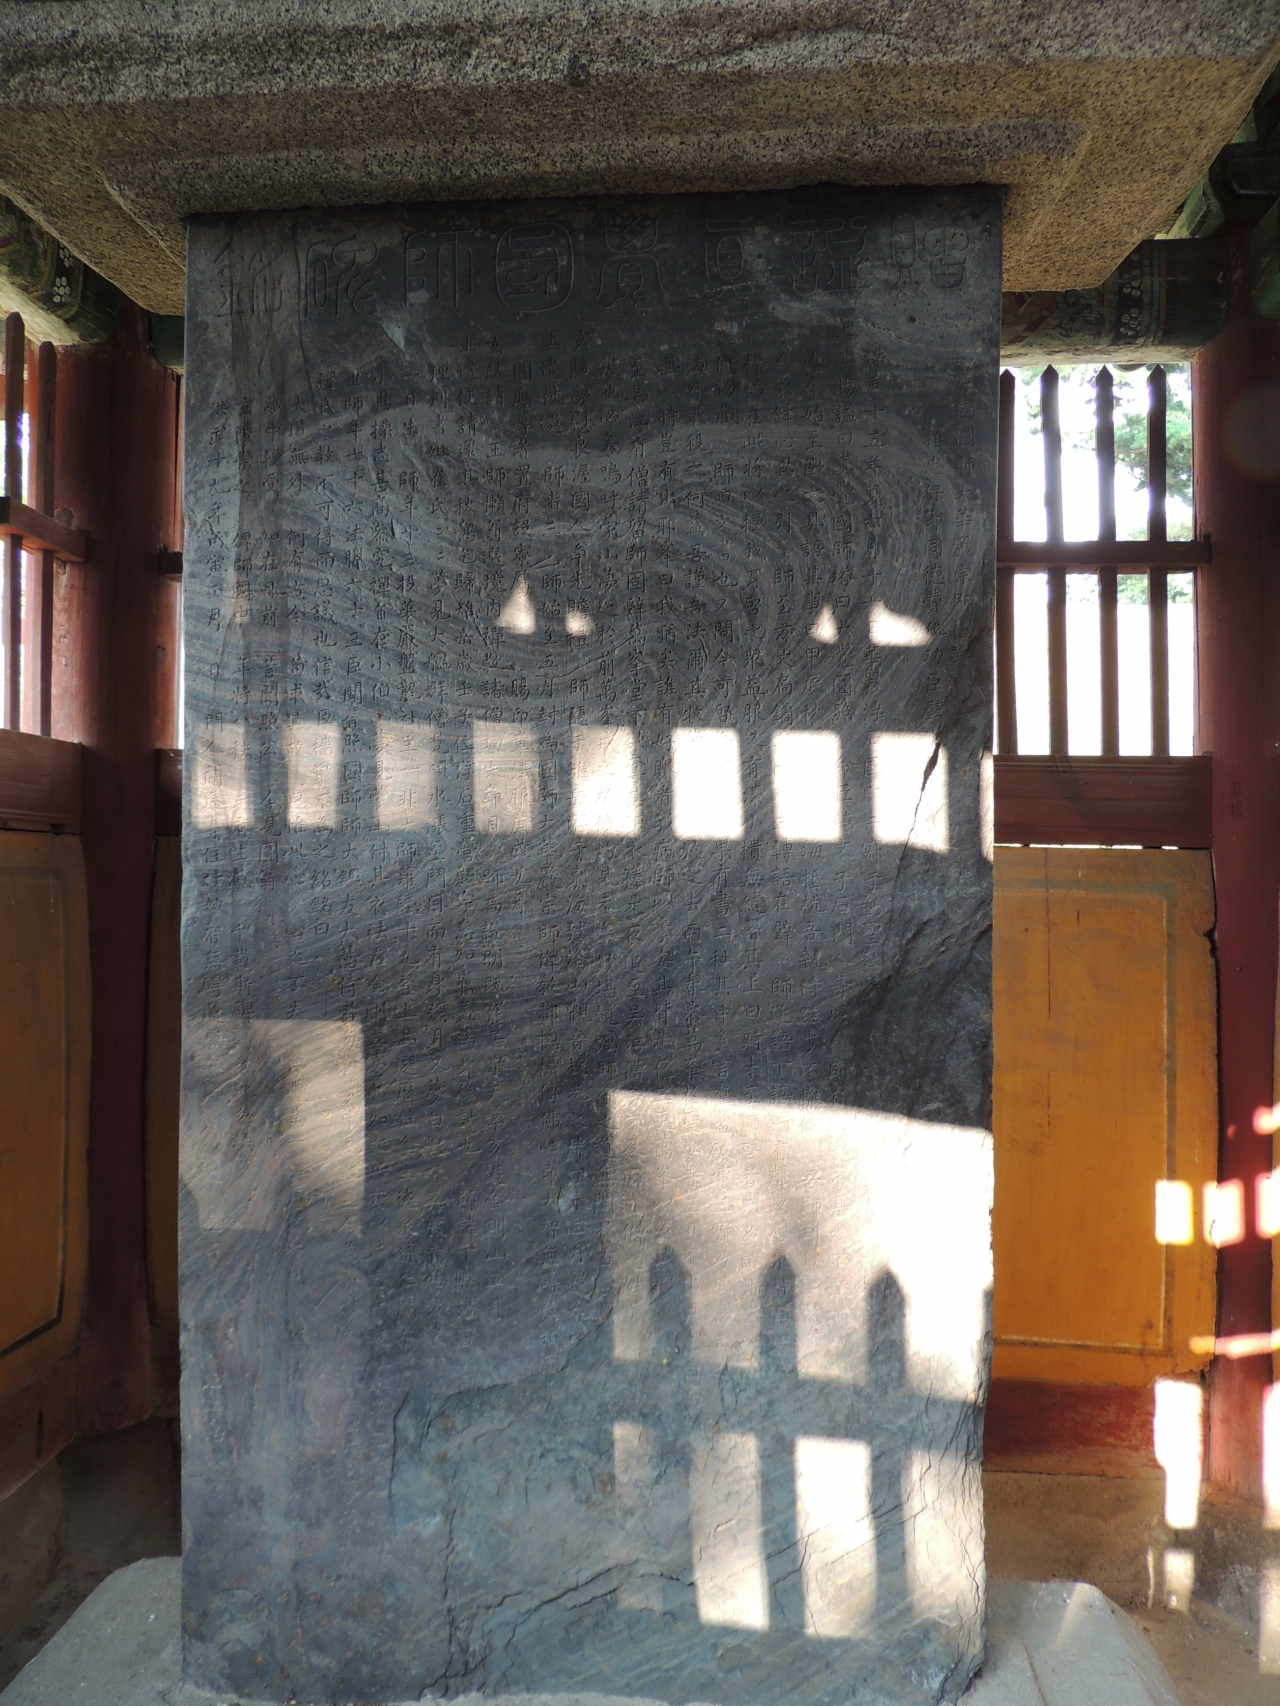 보물 제14호, 수원 창성사지 진국국사탑비의 비문의 모습